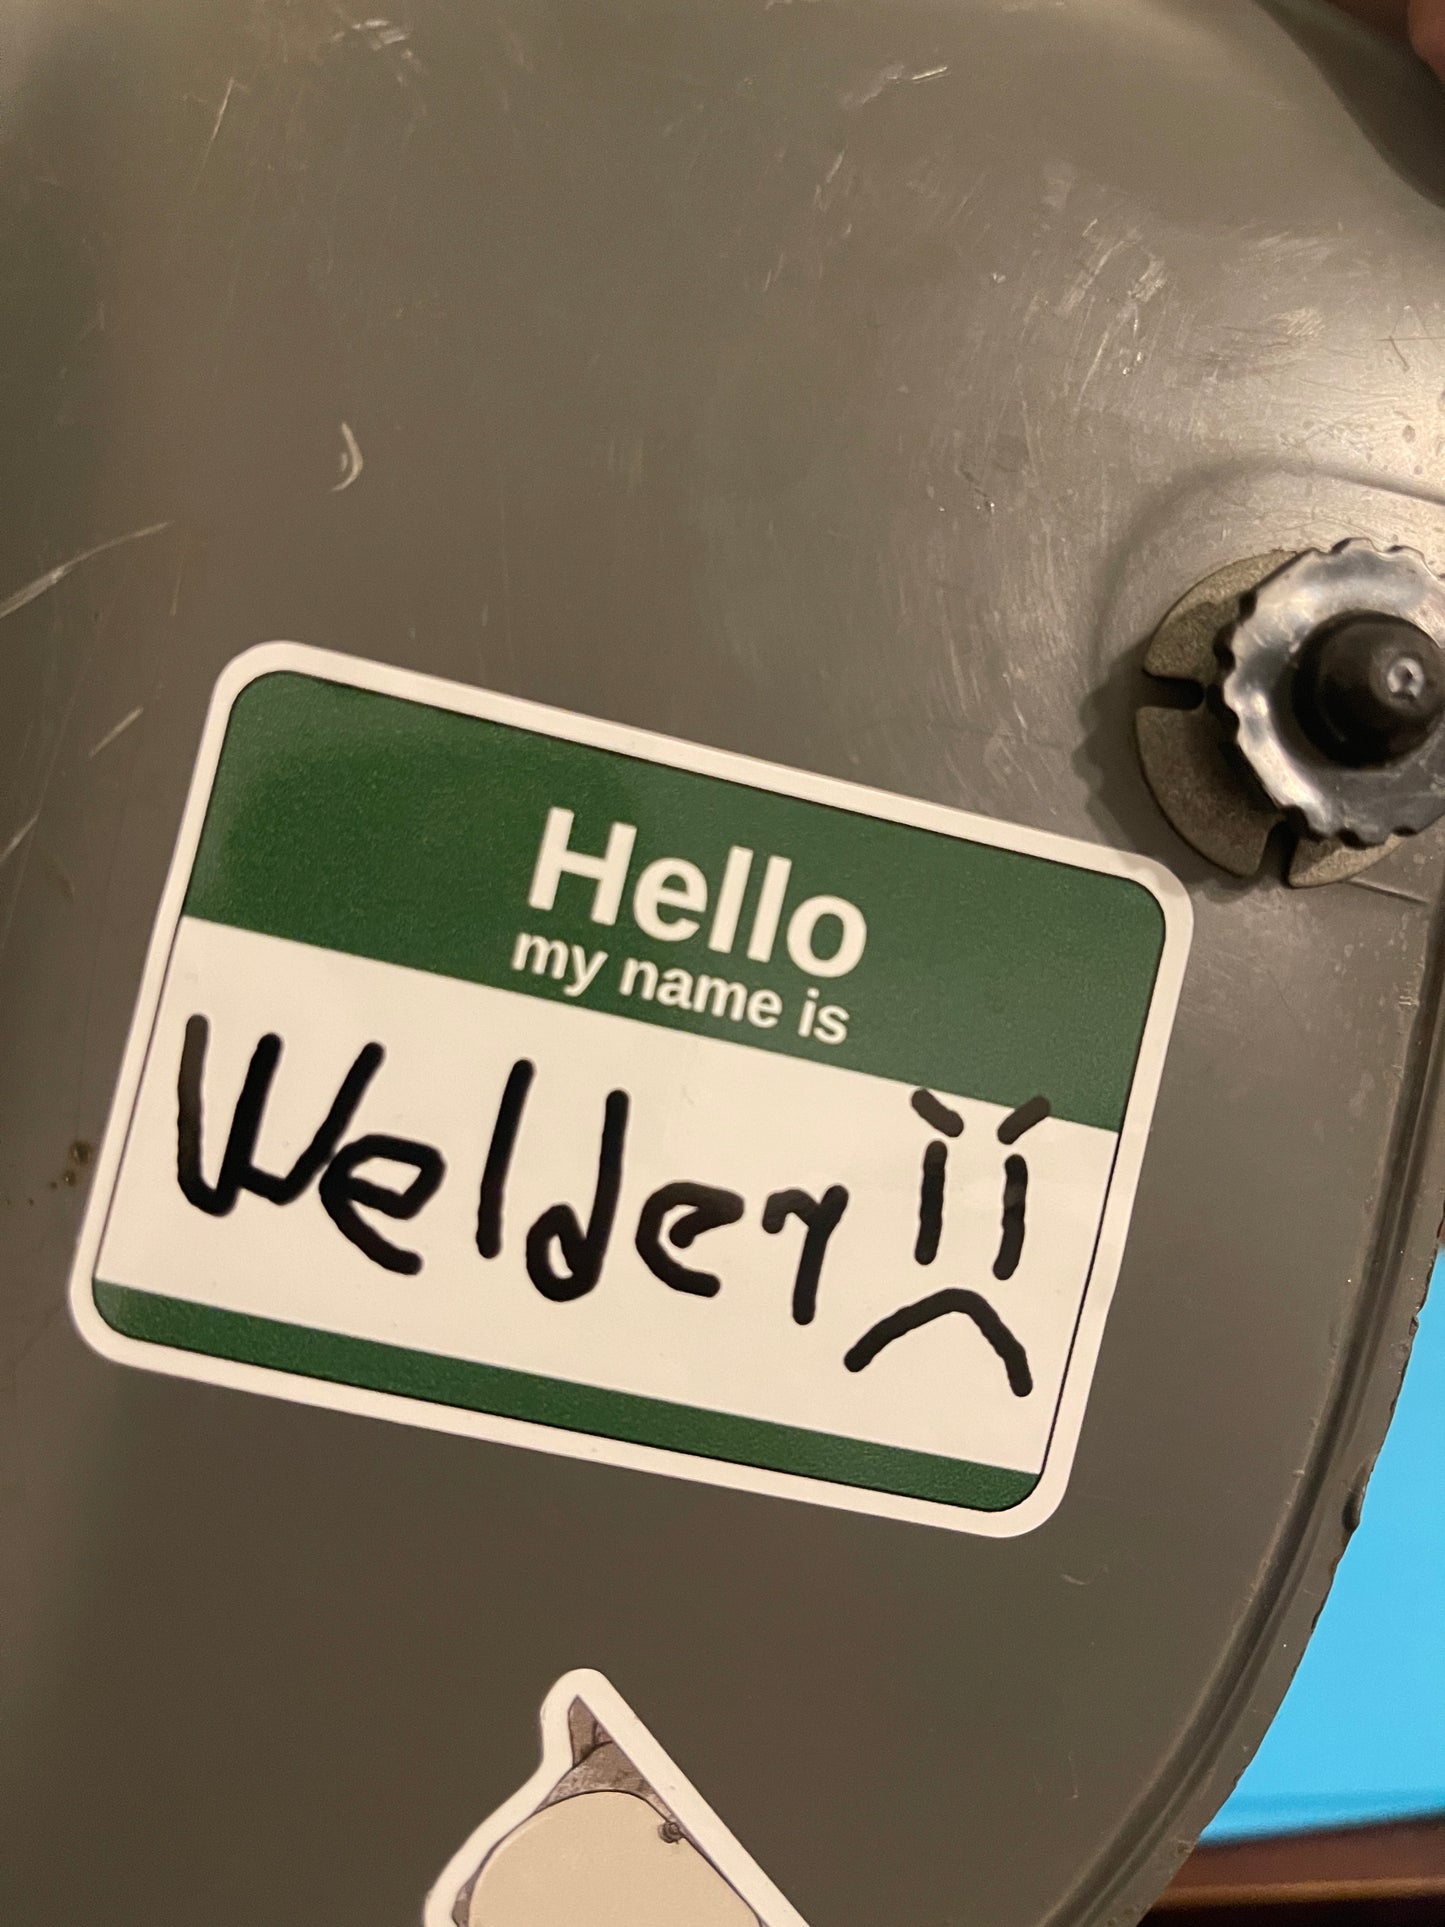 Hello my name is welder sticker